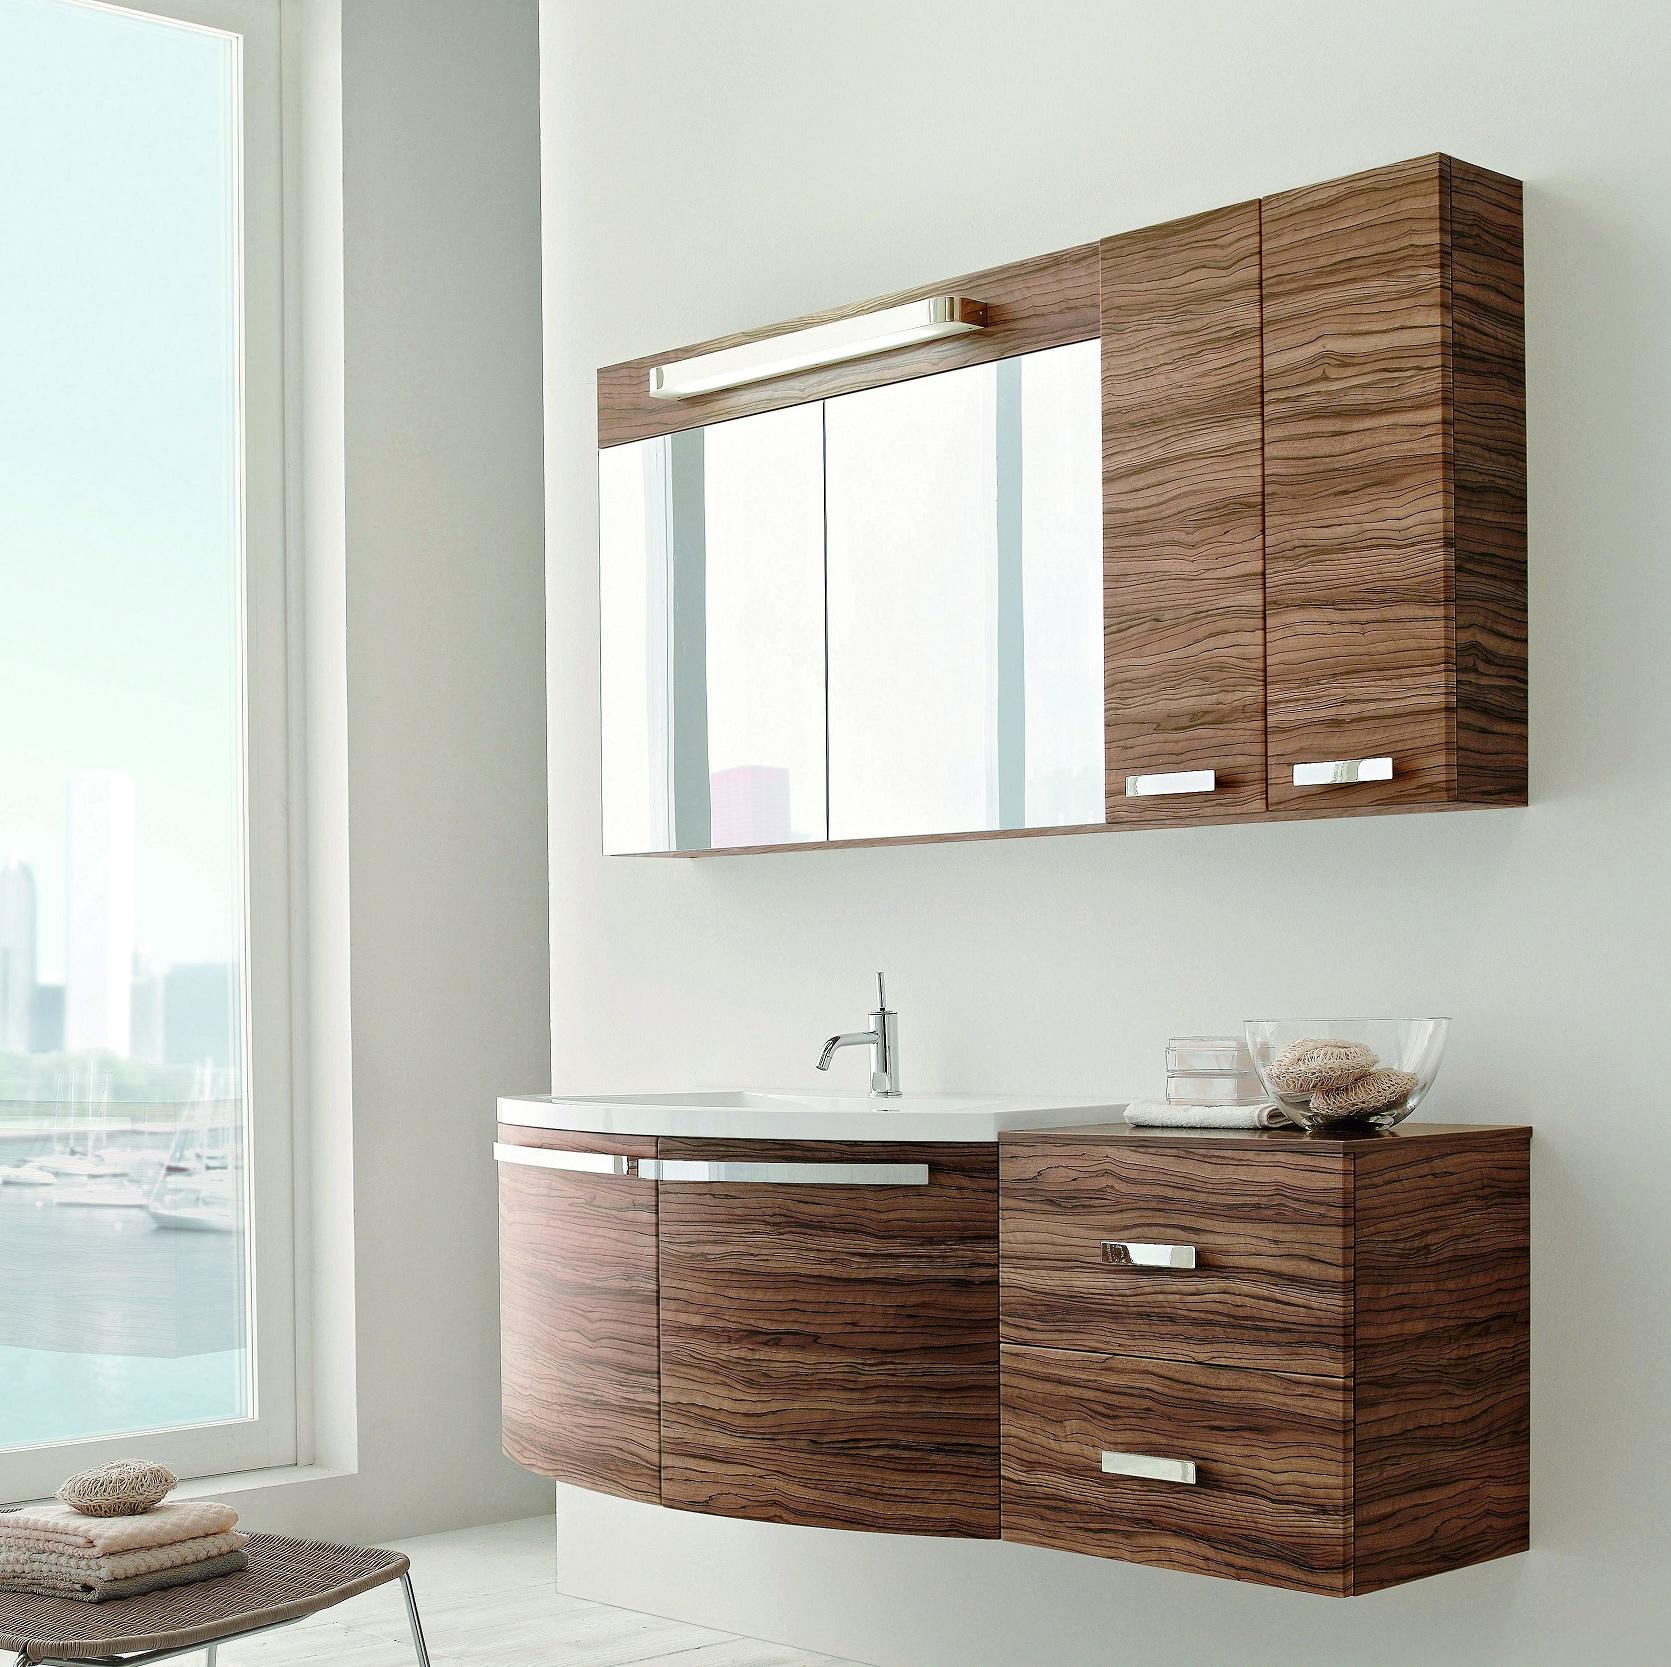 Dank moderner Technologien ist es möglich multifunktionale Möbel für das Badezimmer herzustellen